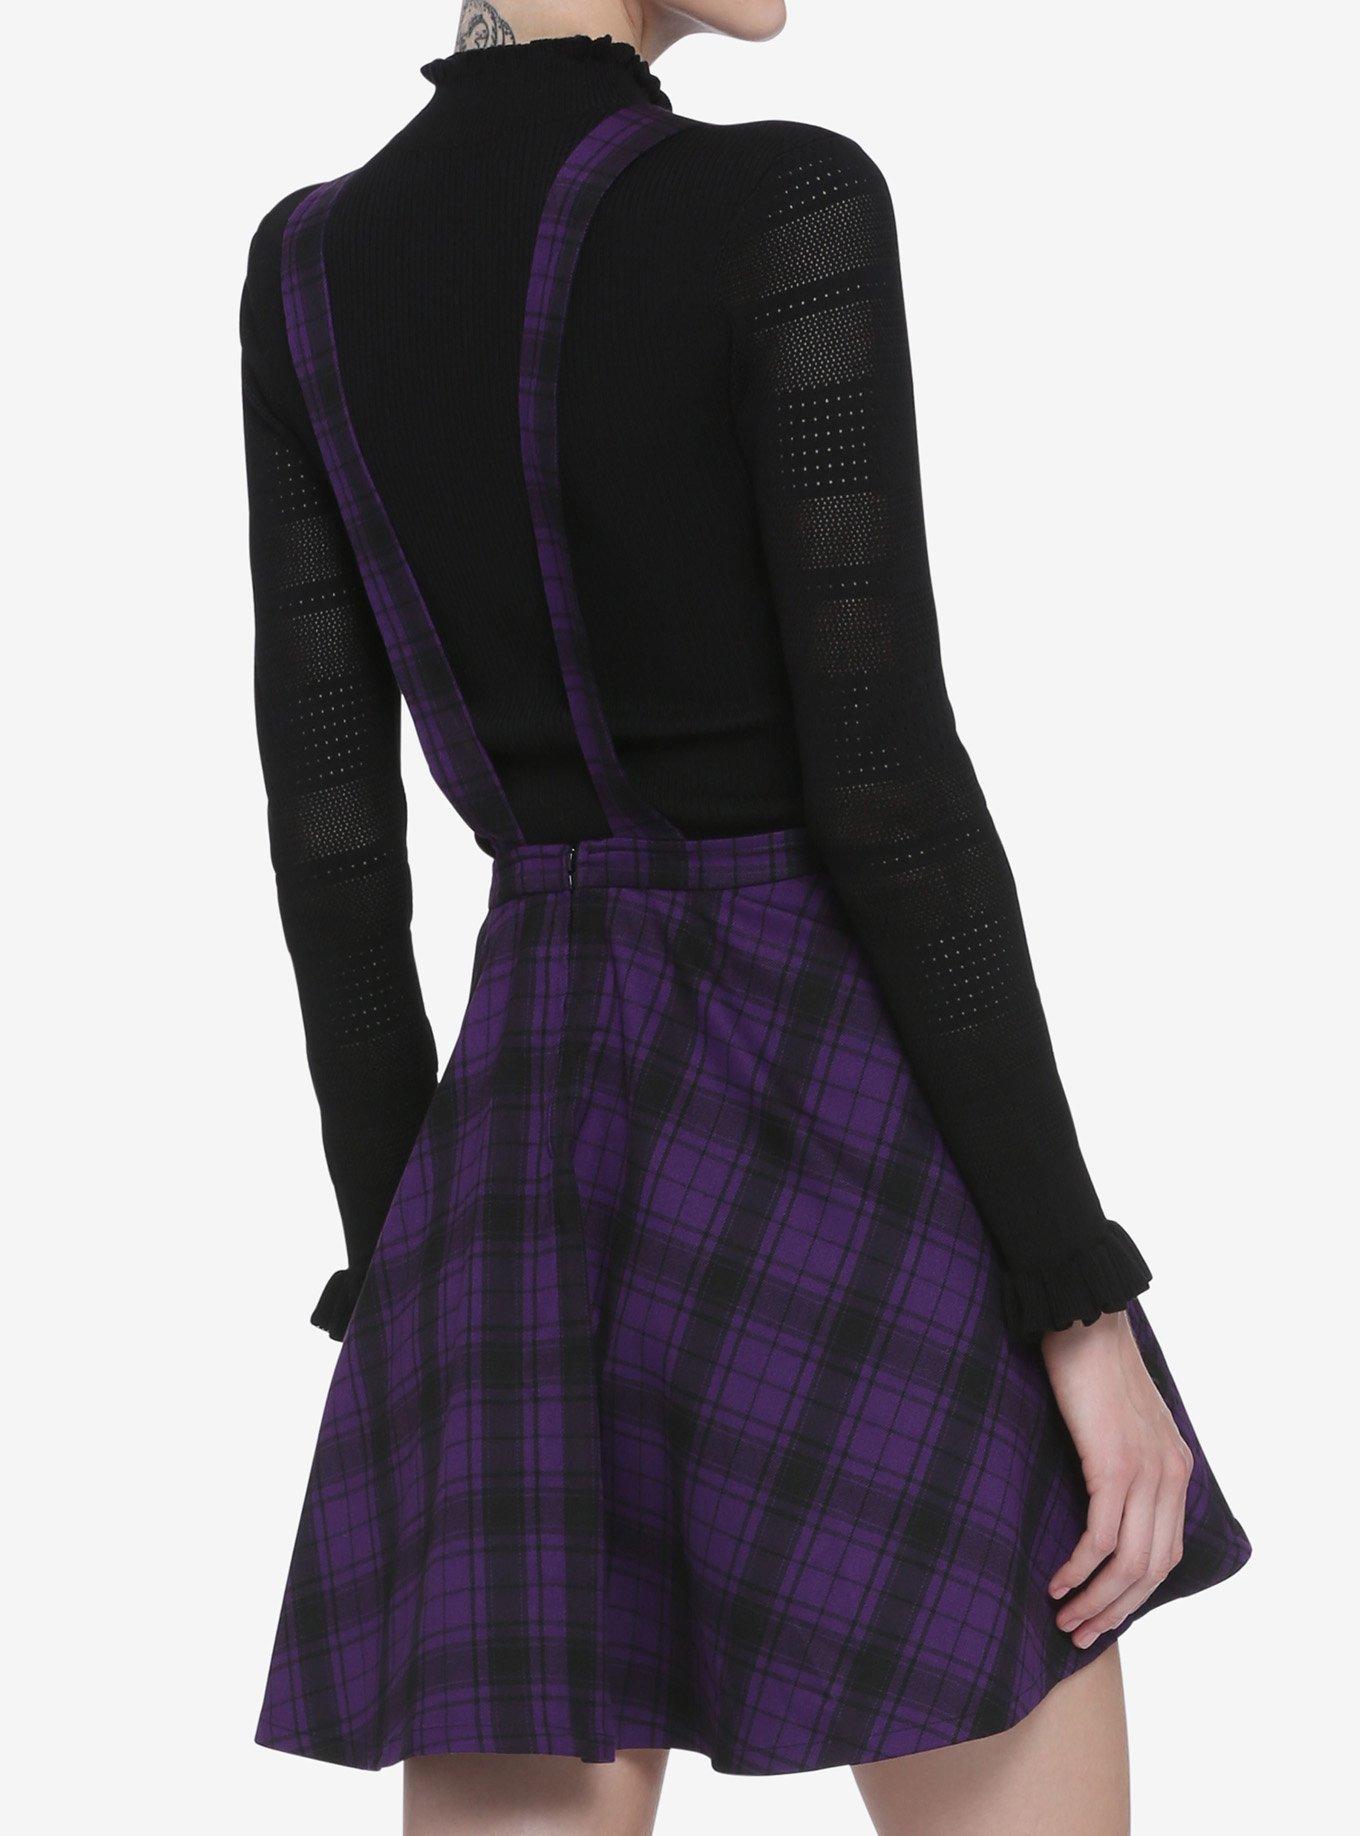 Black & Purple Plaid Skirtall, PLAID - PURPLE, alternate